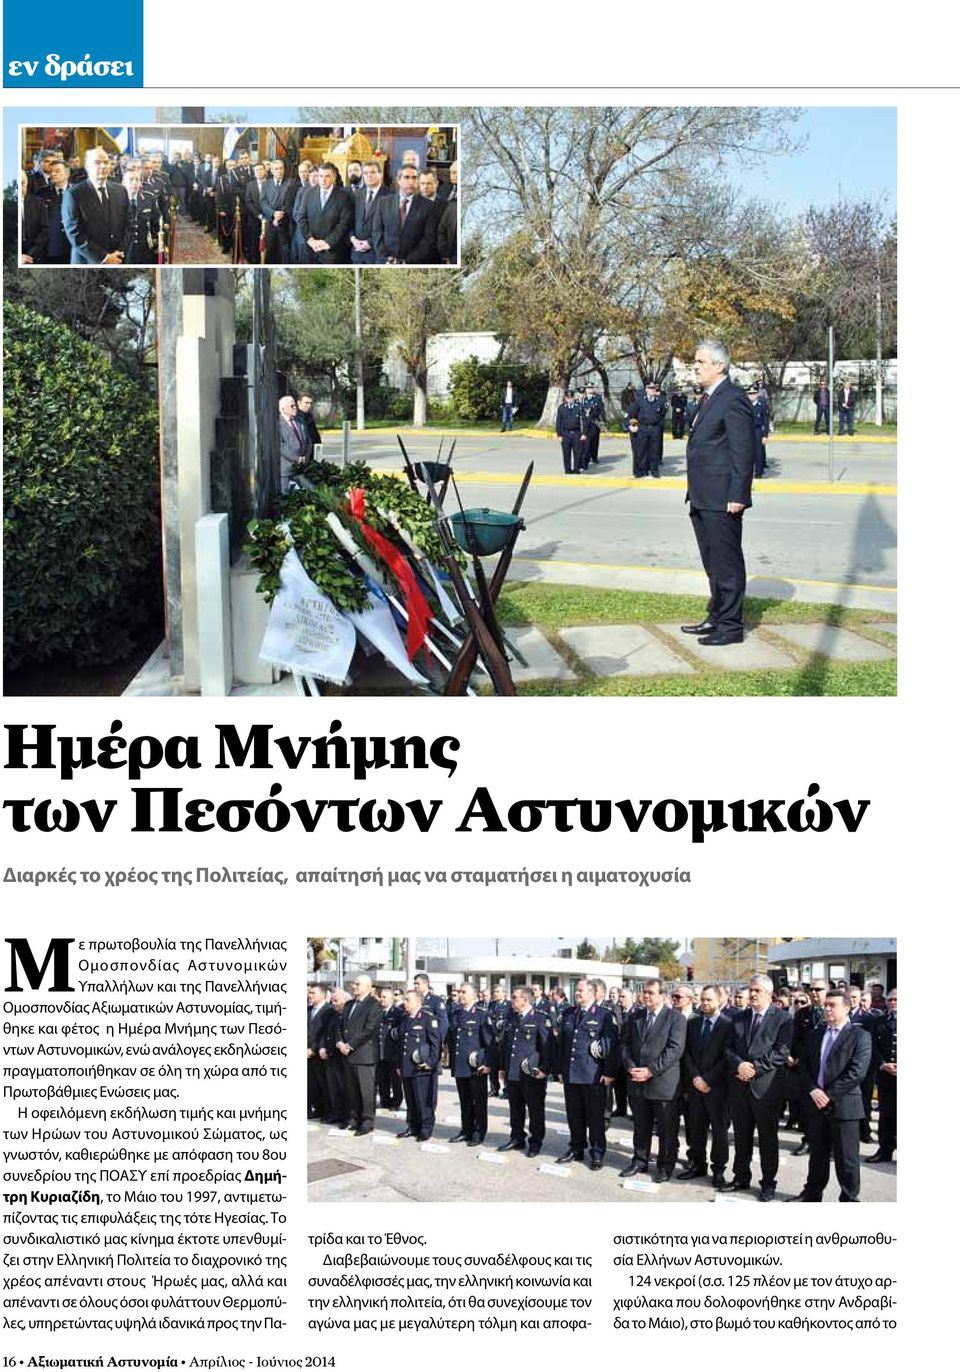 Η οφειλόμενη εκδήλωση τιμής και μνήμης των Ηρώων του Αστυνομικού Σώματος, ως γνωστόν, καθιερώθηκε με απόφαση του 8ου συνεδρίου της ΠΟΑΣΥ επί προεδρίας Δημήτρη Κυριαζίδη, το Μάιο του 1997,